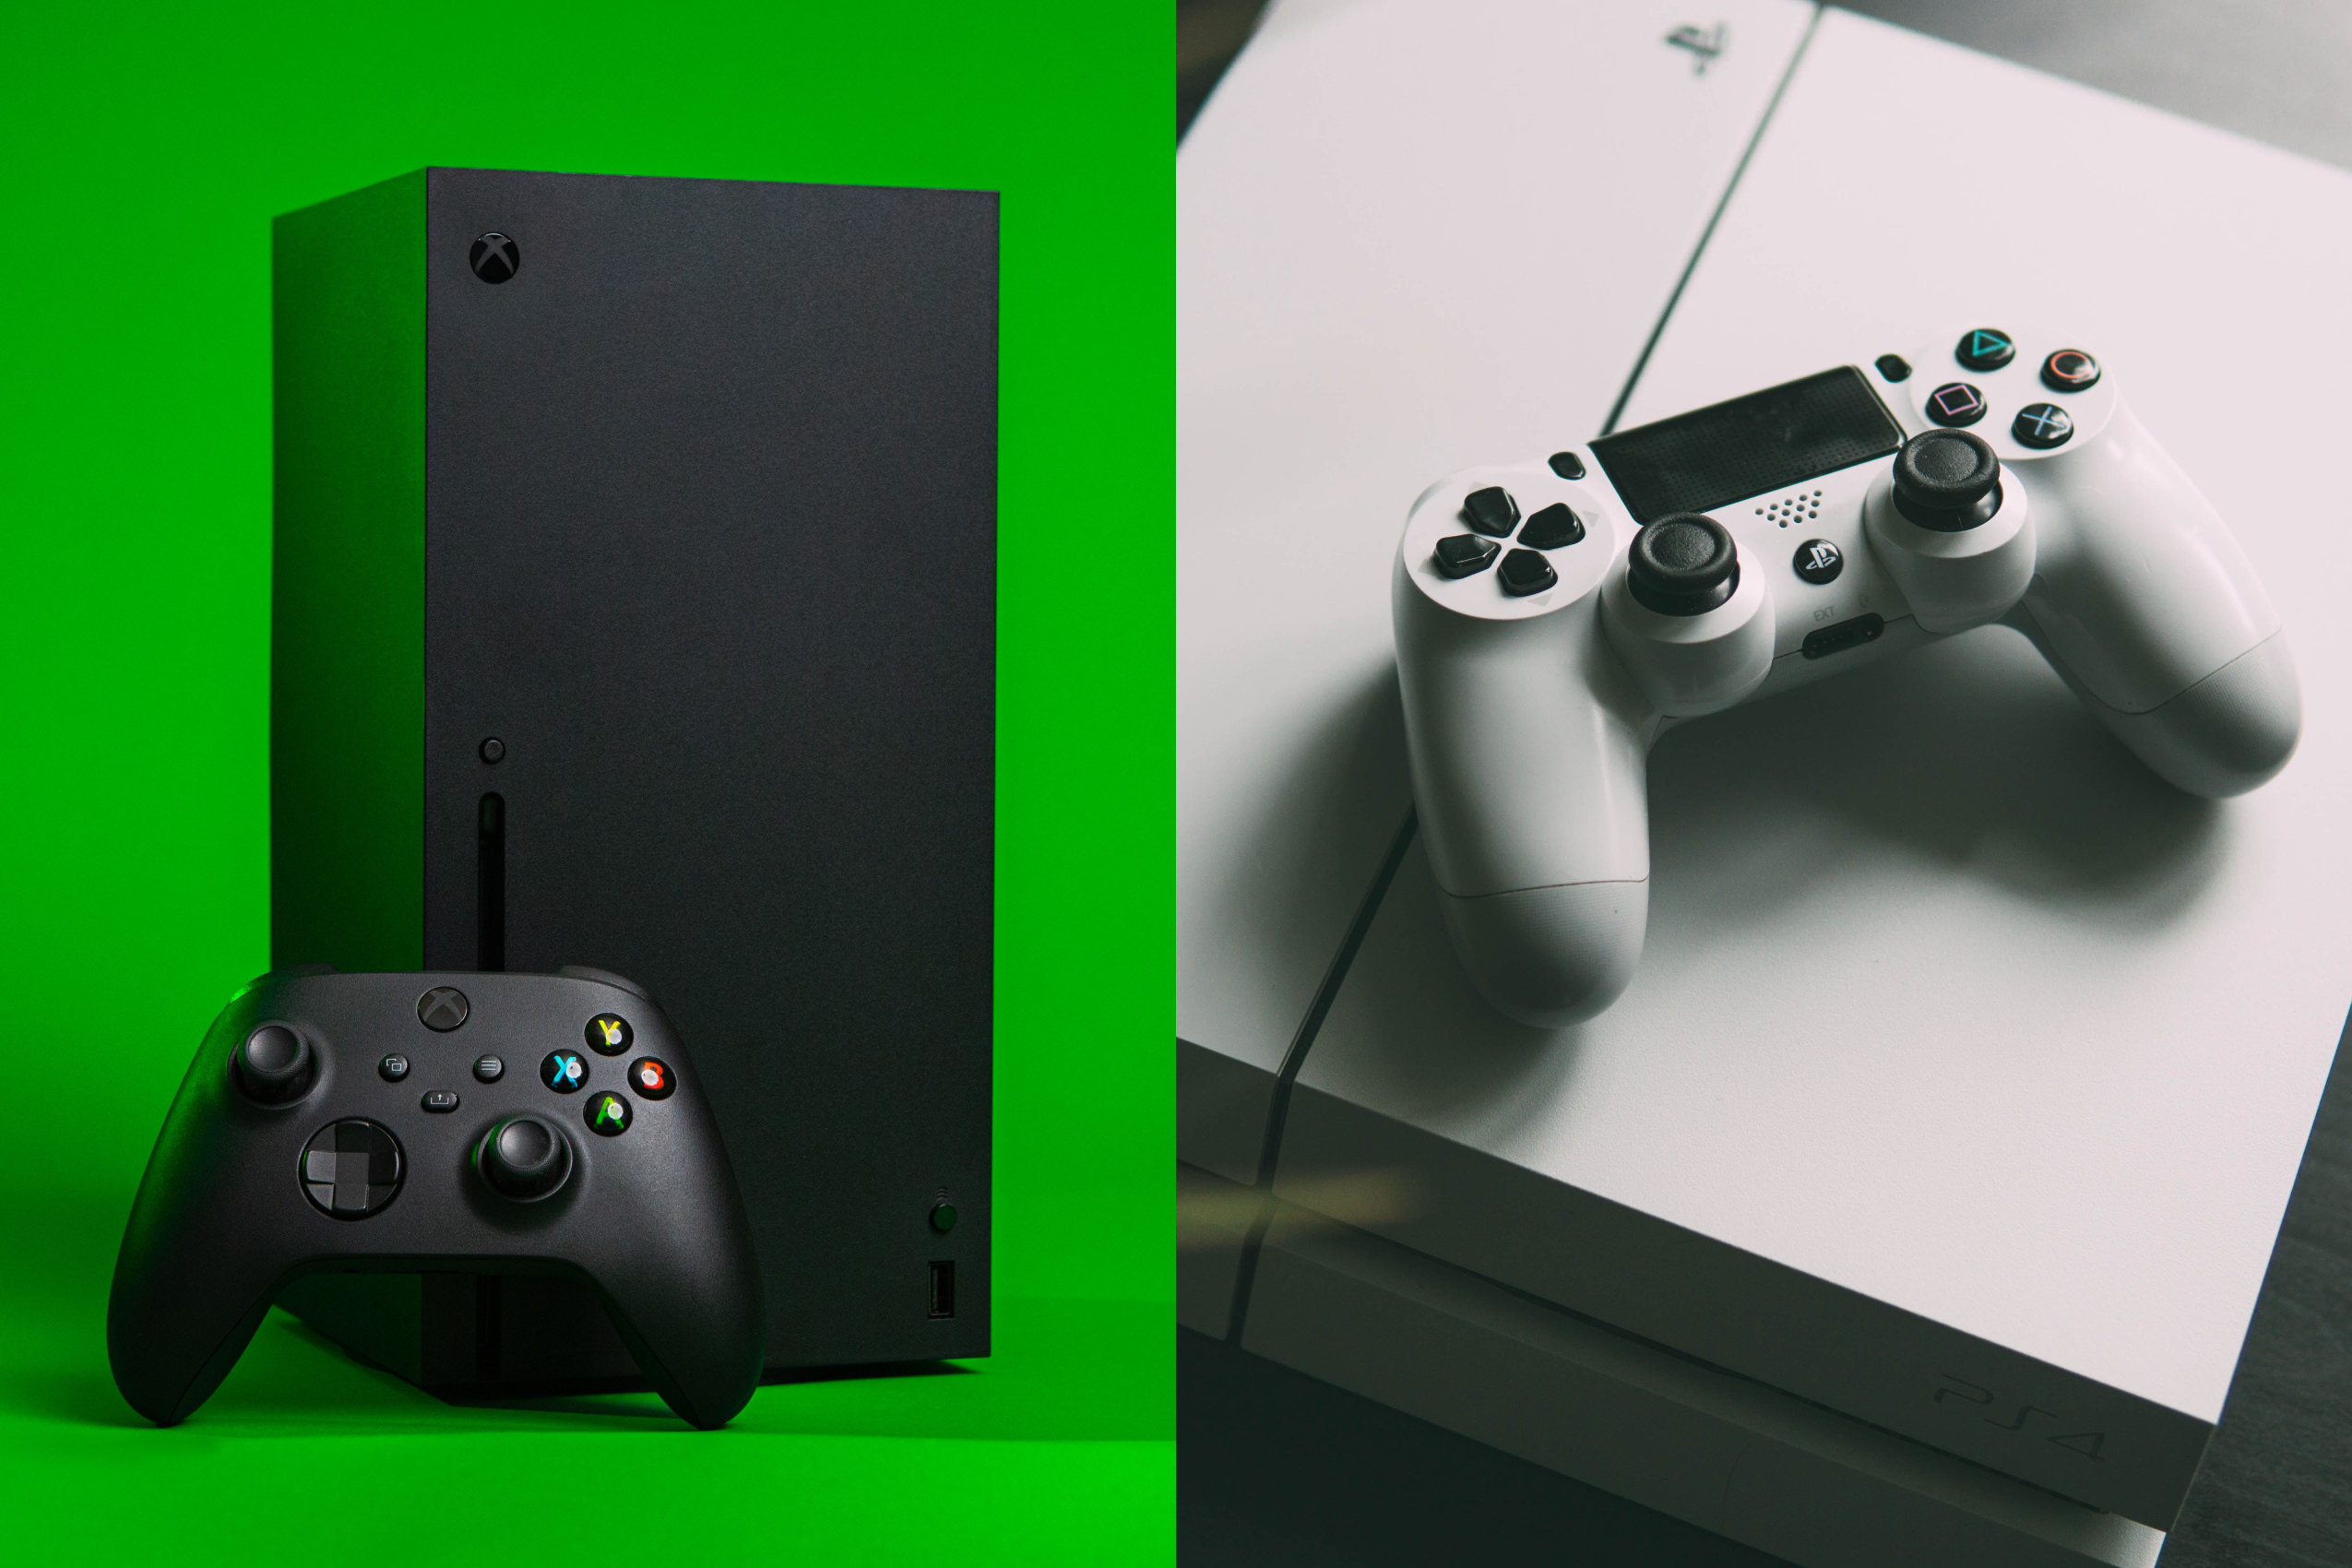 PS4 ou Xbox One? REVELADO o CONSOLE MAIS VENDIDO (Imagem: Billy Freeman, Nikita Kachanovsky/ Unsplash)